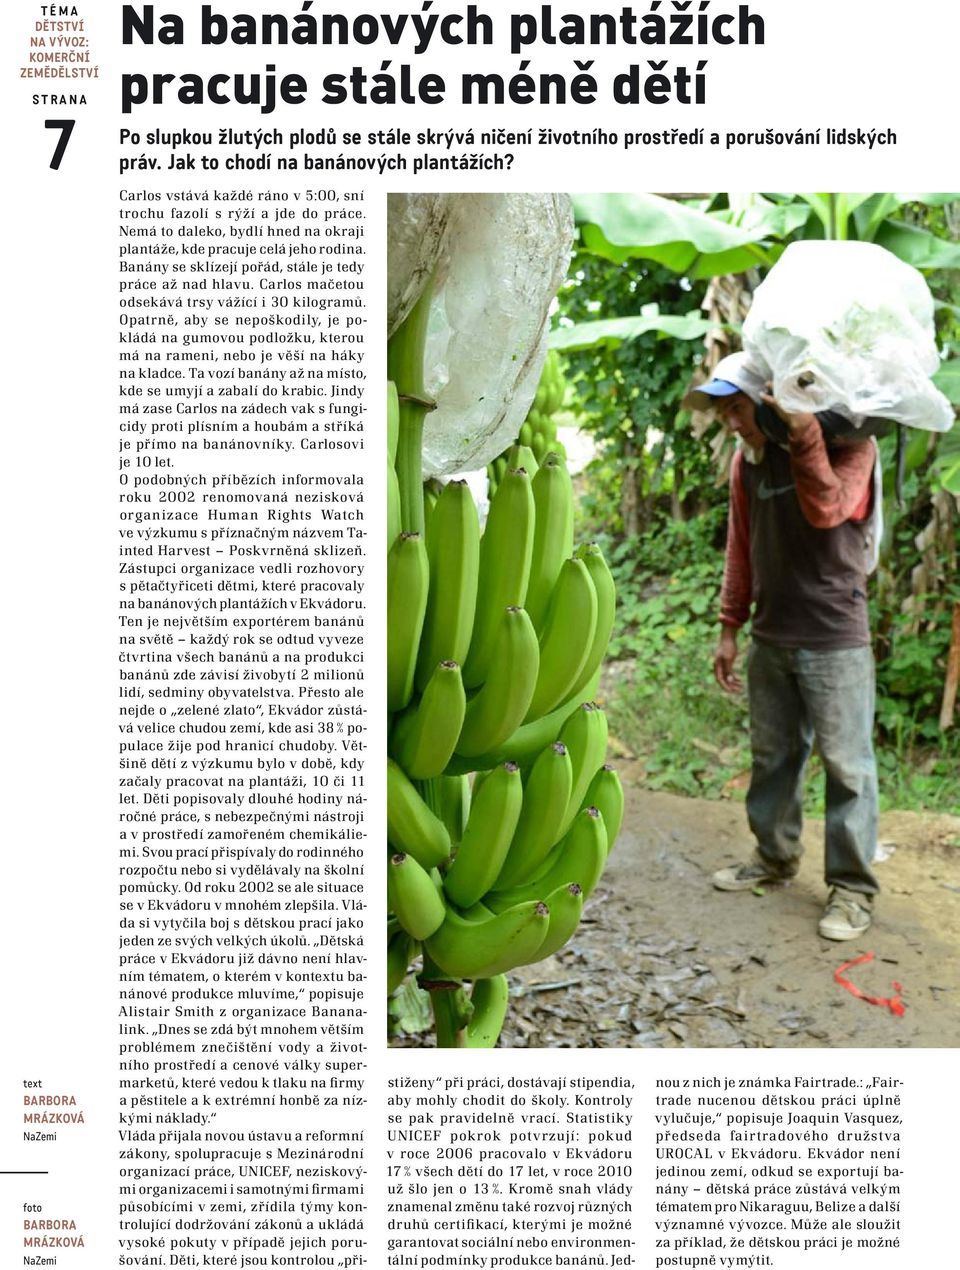 Nemá to daleko, bydlí hned na okraji plantáže, kde pracuje celá jeho rodina. Banány se sklízejí pořád, stále je tedy práce až nad hlavu. Carlos mačetou odsekává trsy vážící i 30 kilogramů.